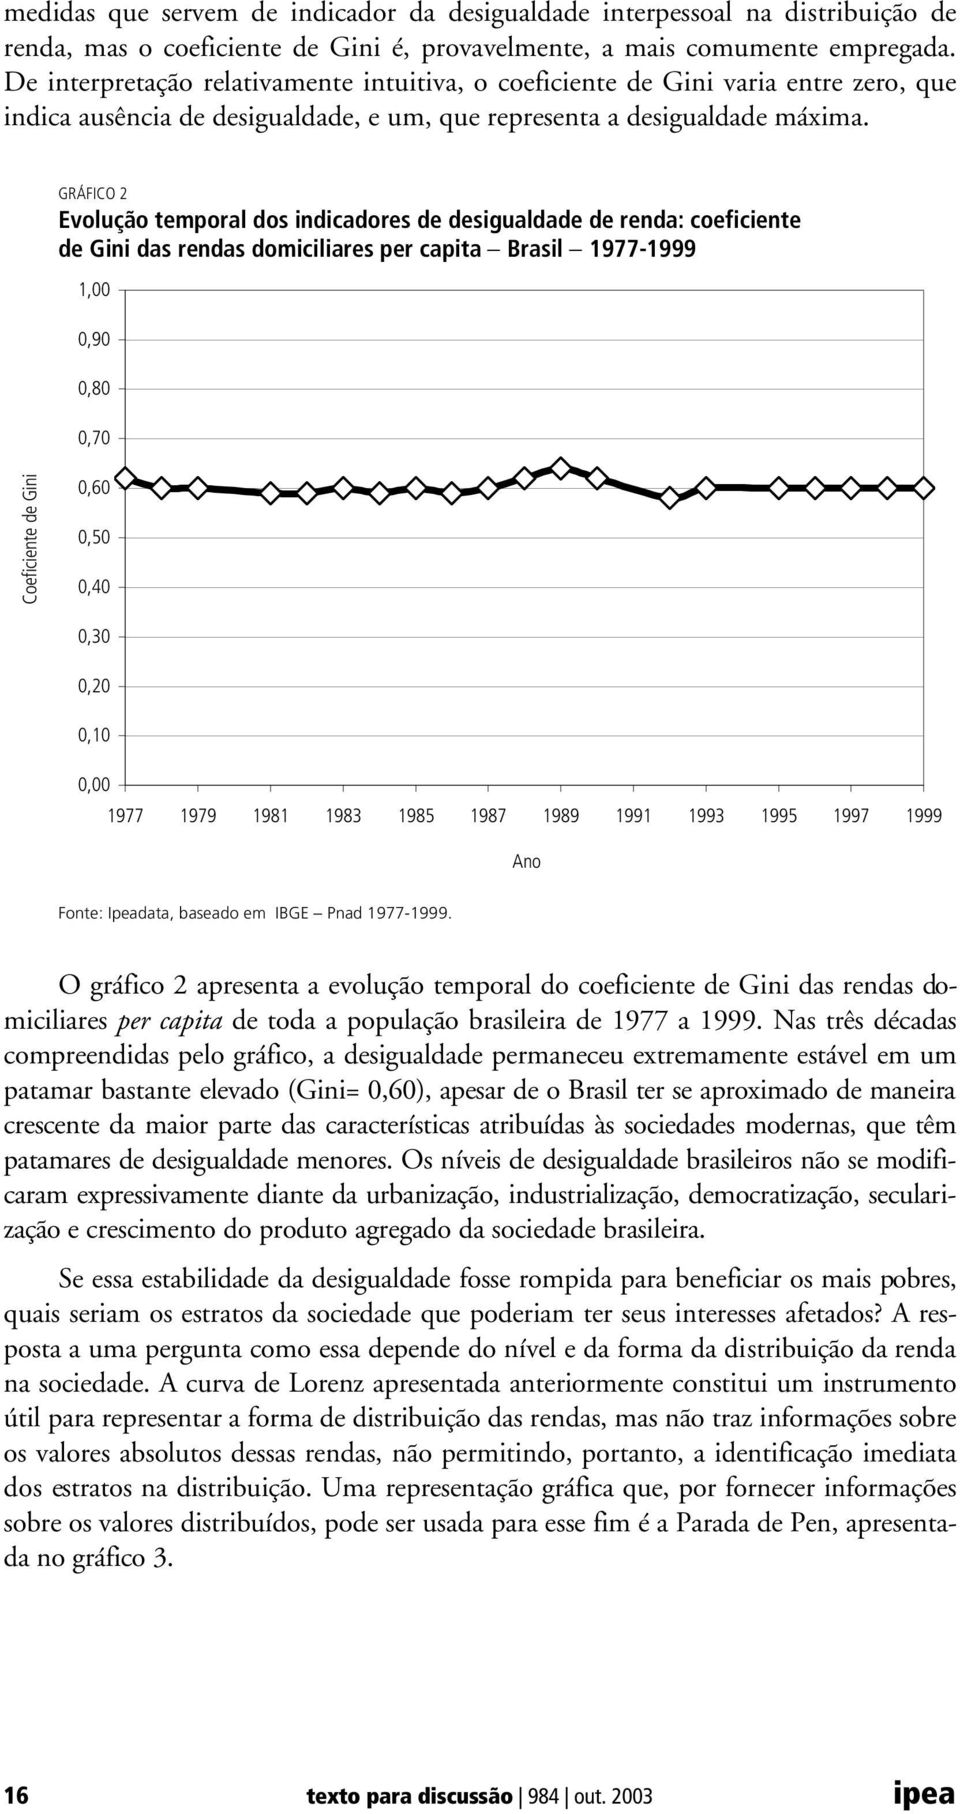 GRÁFICO 2 Evolução temporal dos indicadores de desigualdade de renda: coeficiente de Gini das rendas domiciliares per capita - Brasil - 1977-1999 1,00 0,90 0,80 0,70 Coeficiente de Gini 0,60 0,50